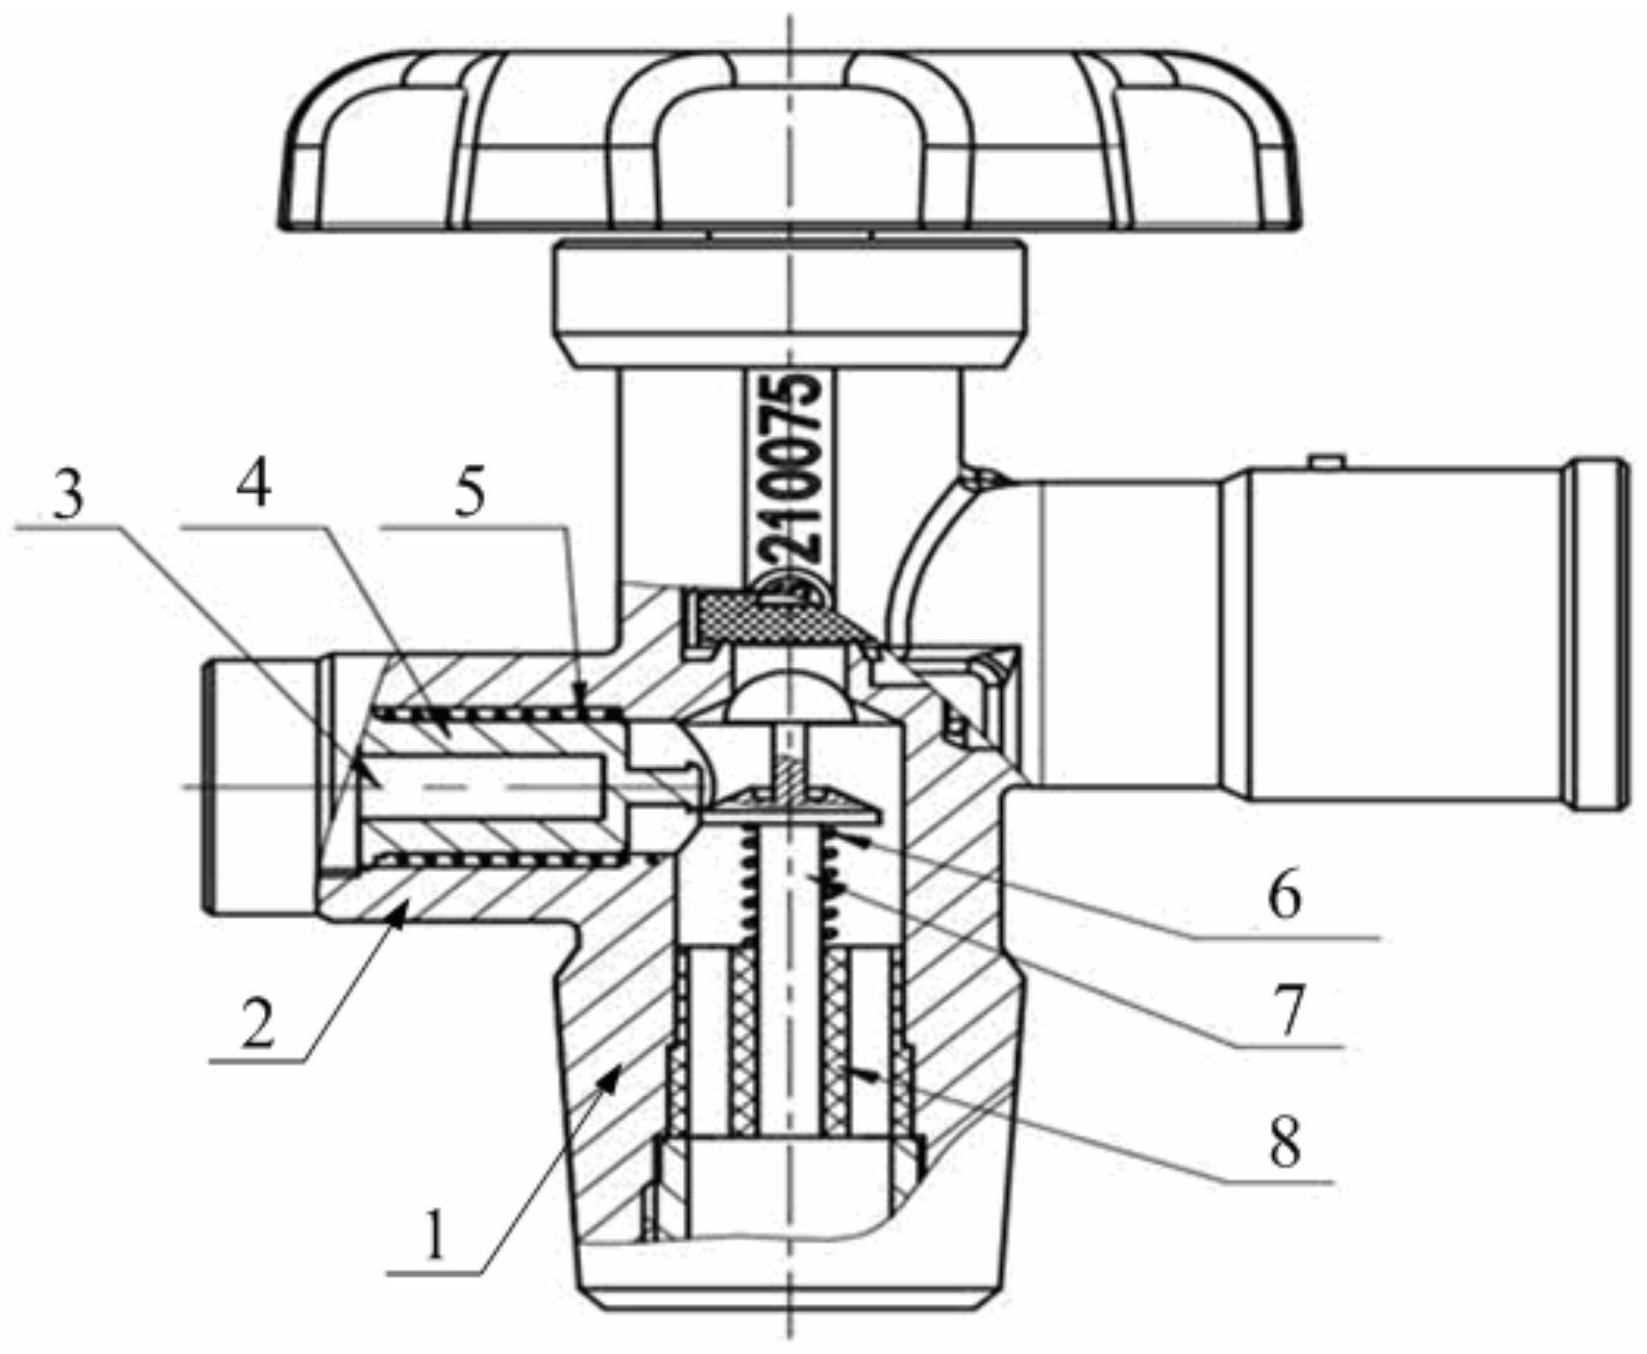 液化气罐阀门结构图图片